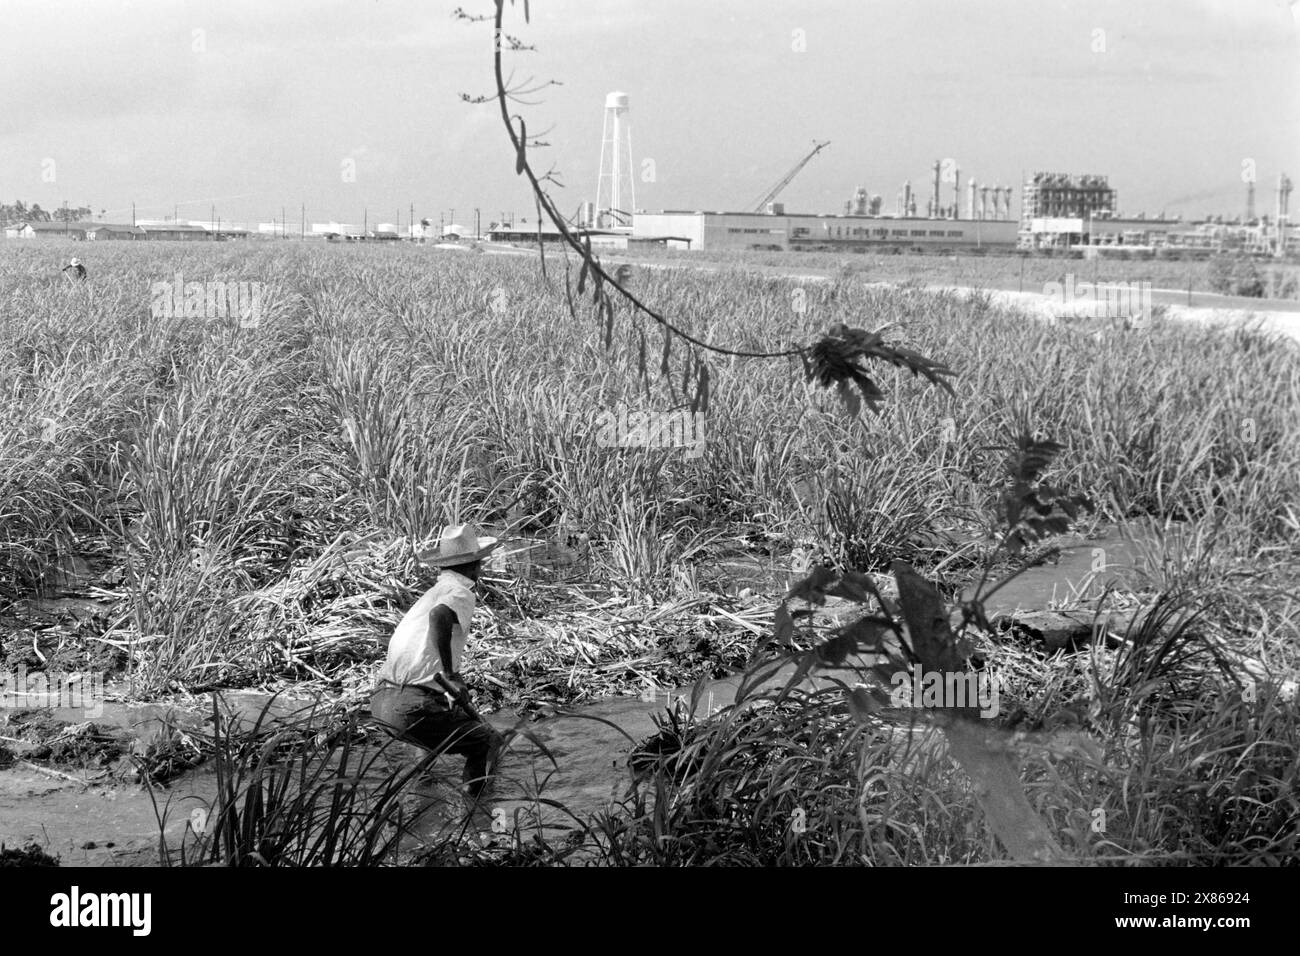 Ein Arbeiter auf einer Zuckerrohrplantage, im Hintergrund eine Chemiefabrik, Puerto Rico 1966. Ein Arbeiter auf einer Zuckerrohrplantage, im Hintergrund eine Chemiefabrik, Puerto Rico 1966. Stockfoto